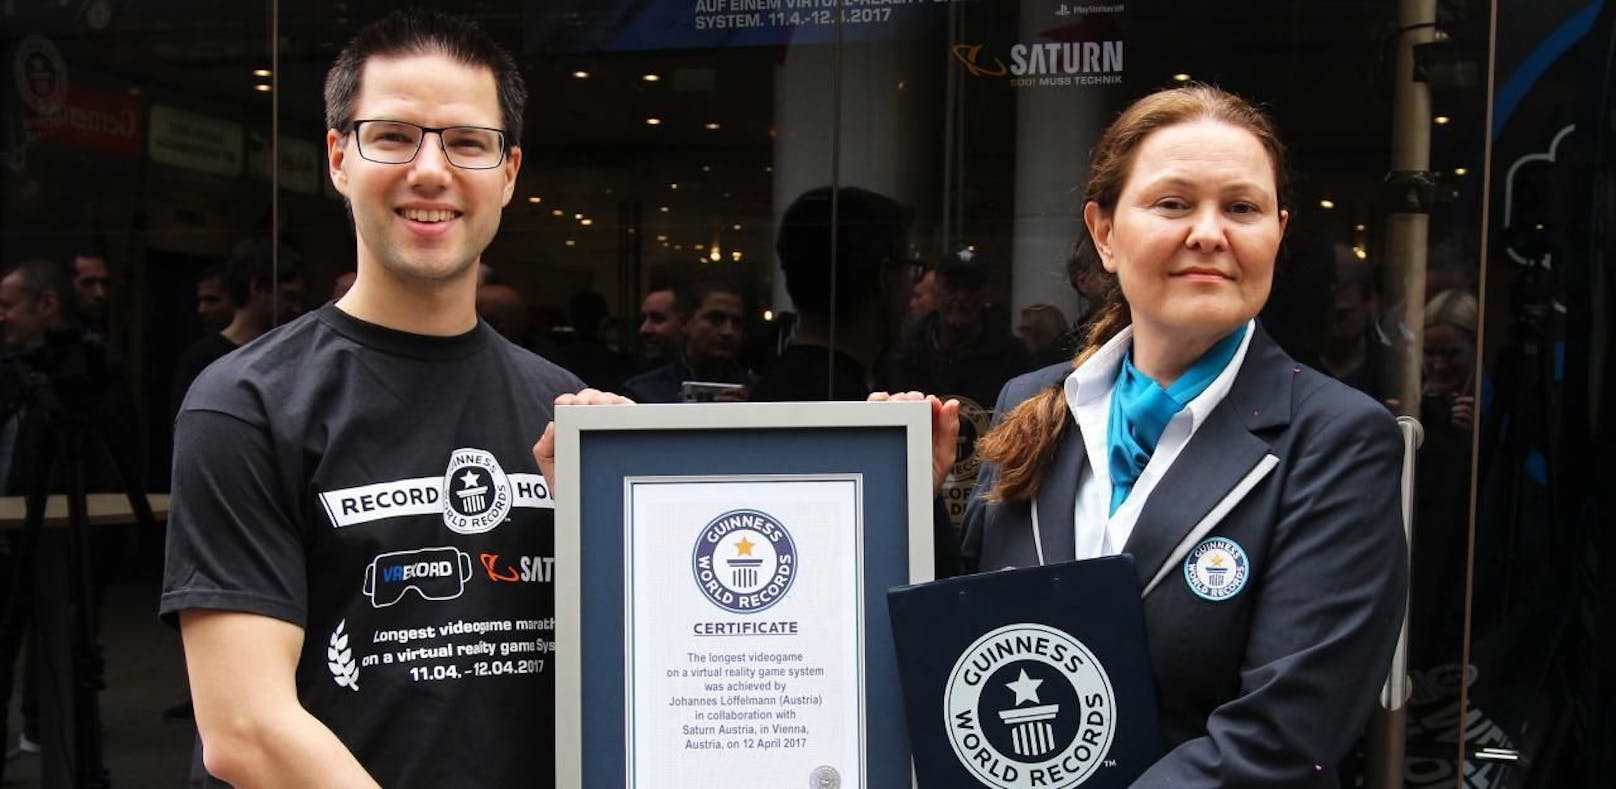 Jetzt ist es offiziell: Johannes Löffelmann erhält die Urkunde von der Guinness World Records Schiedsrichterin.